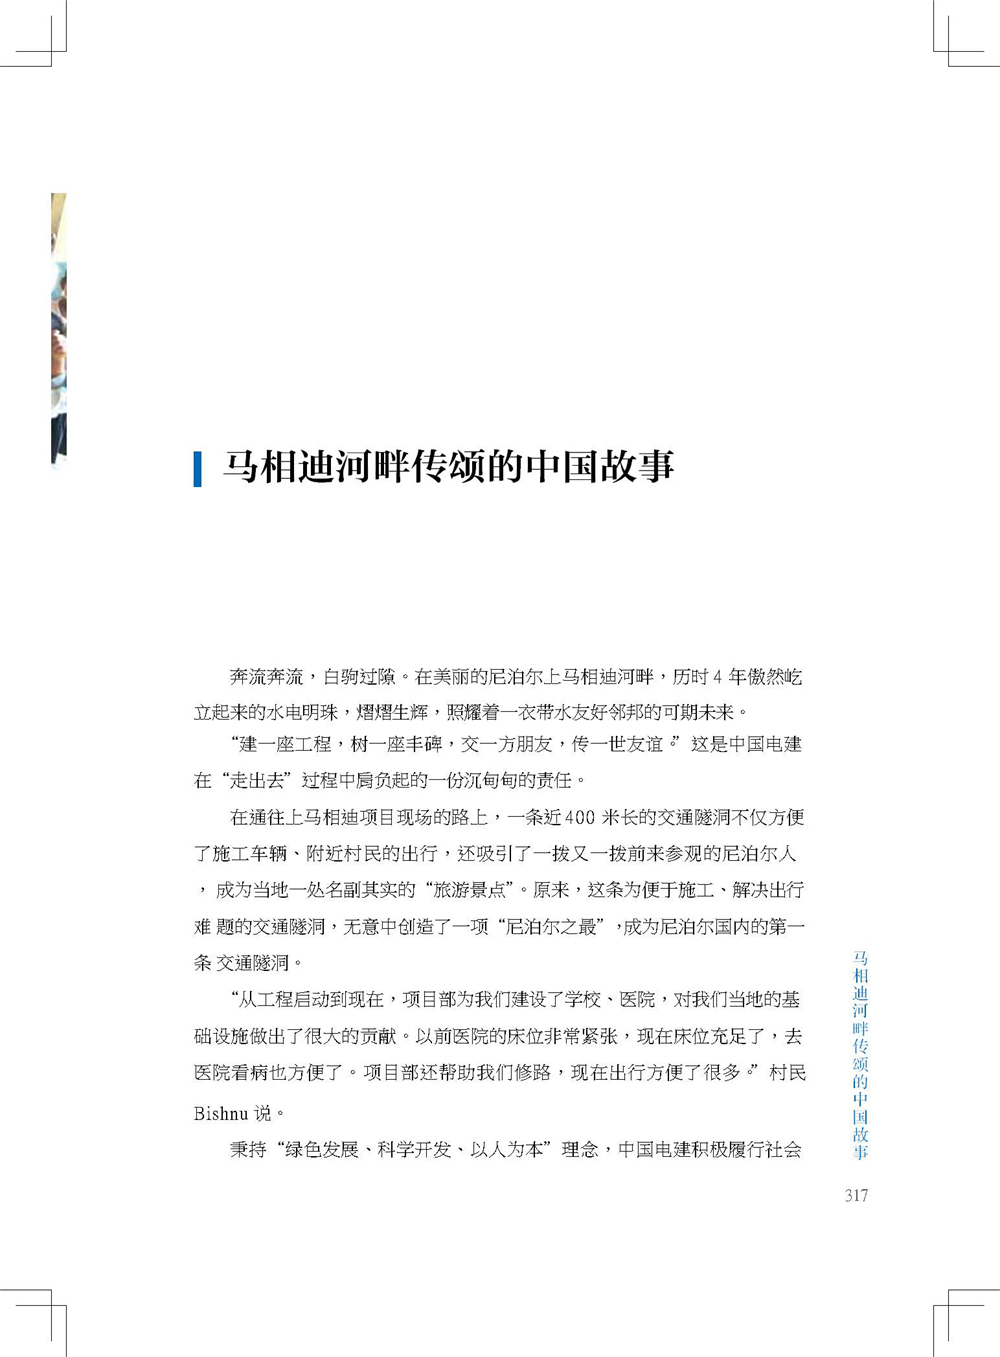 中国电建集团海外投资有限公司《海投故事》